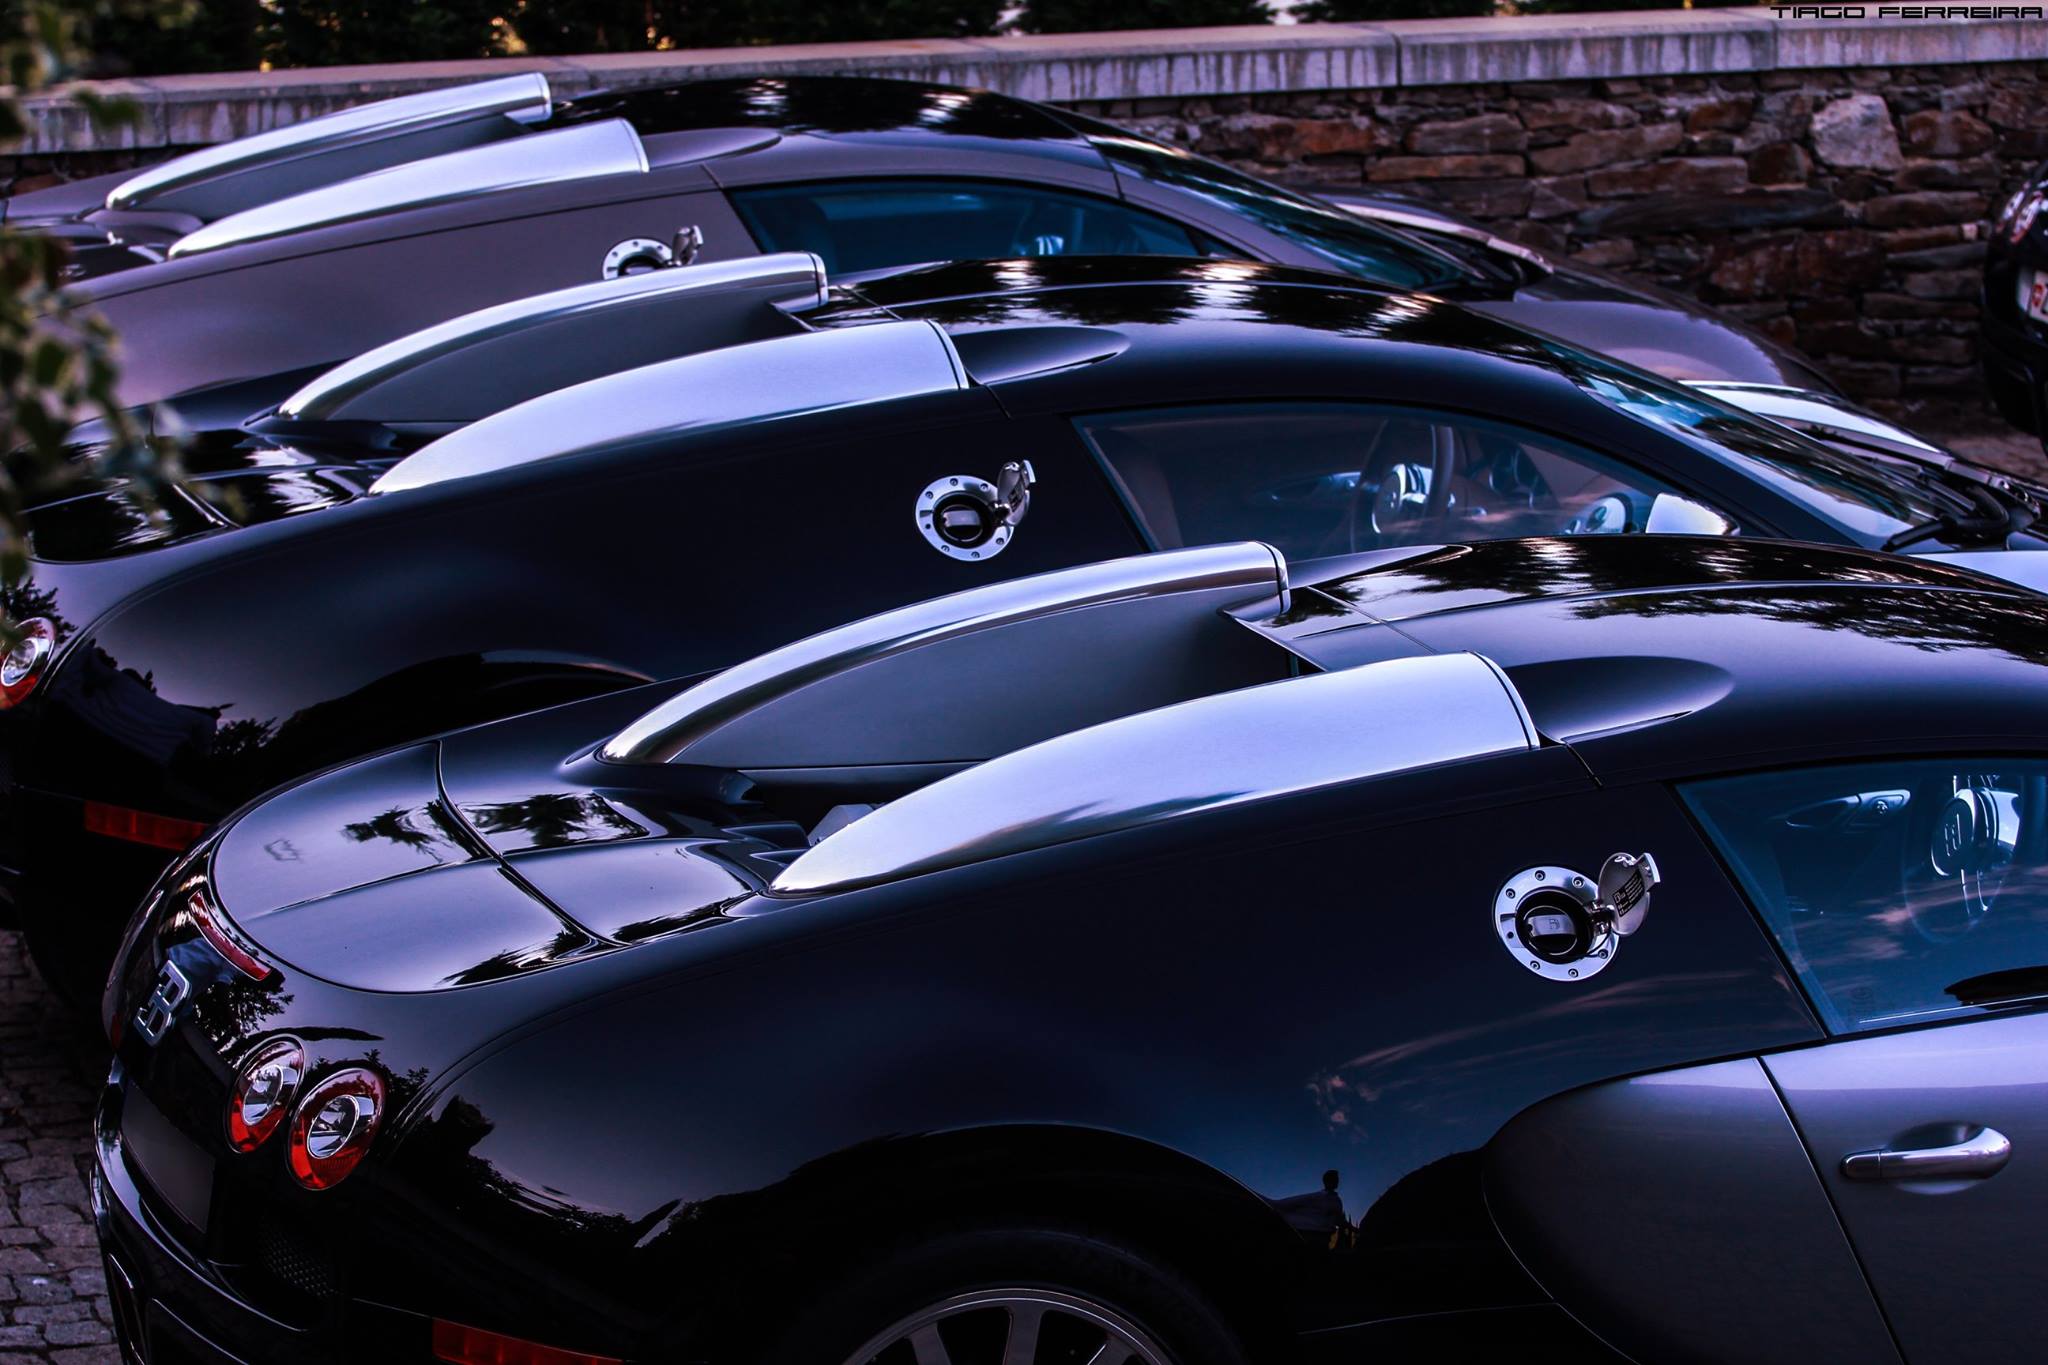 
Có khoảng 10 chiếc Bugatti Veyron xuất hiện trong sự kiện đặc biệt này.
